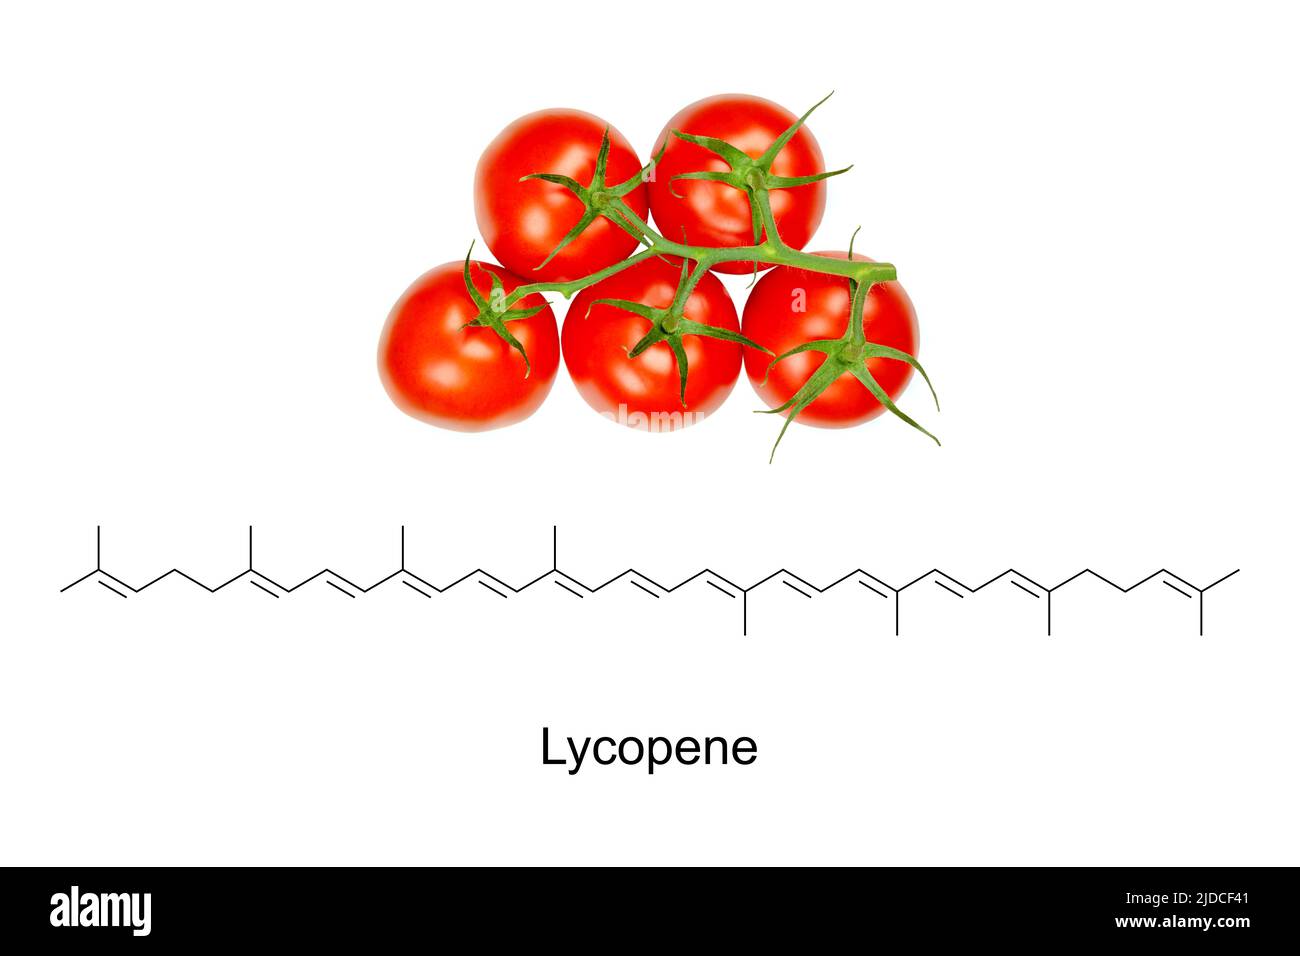 Les tomates panicules et la formule chimique et la structure squelettique du lycopène, un carotène rouge vif, utilisé pour la coloration des aliments, E160d. Banque D'Images